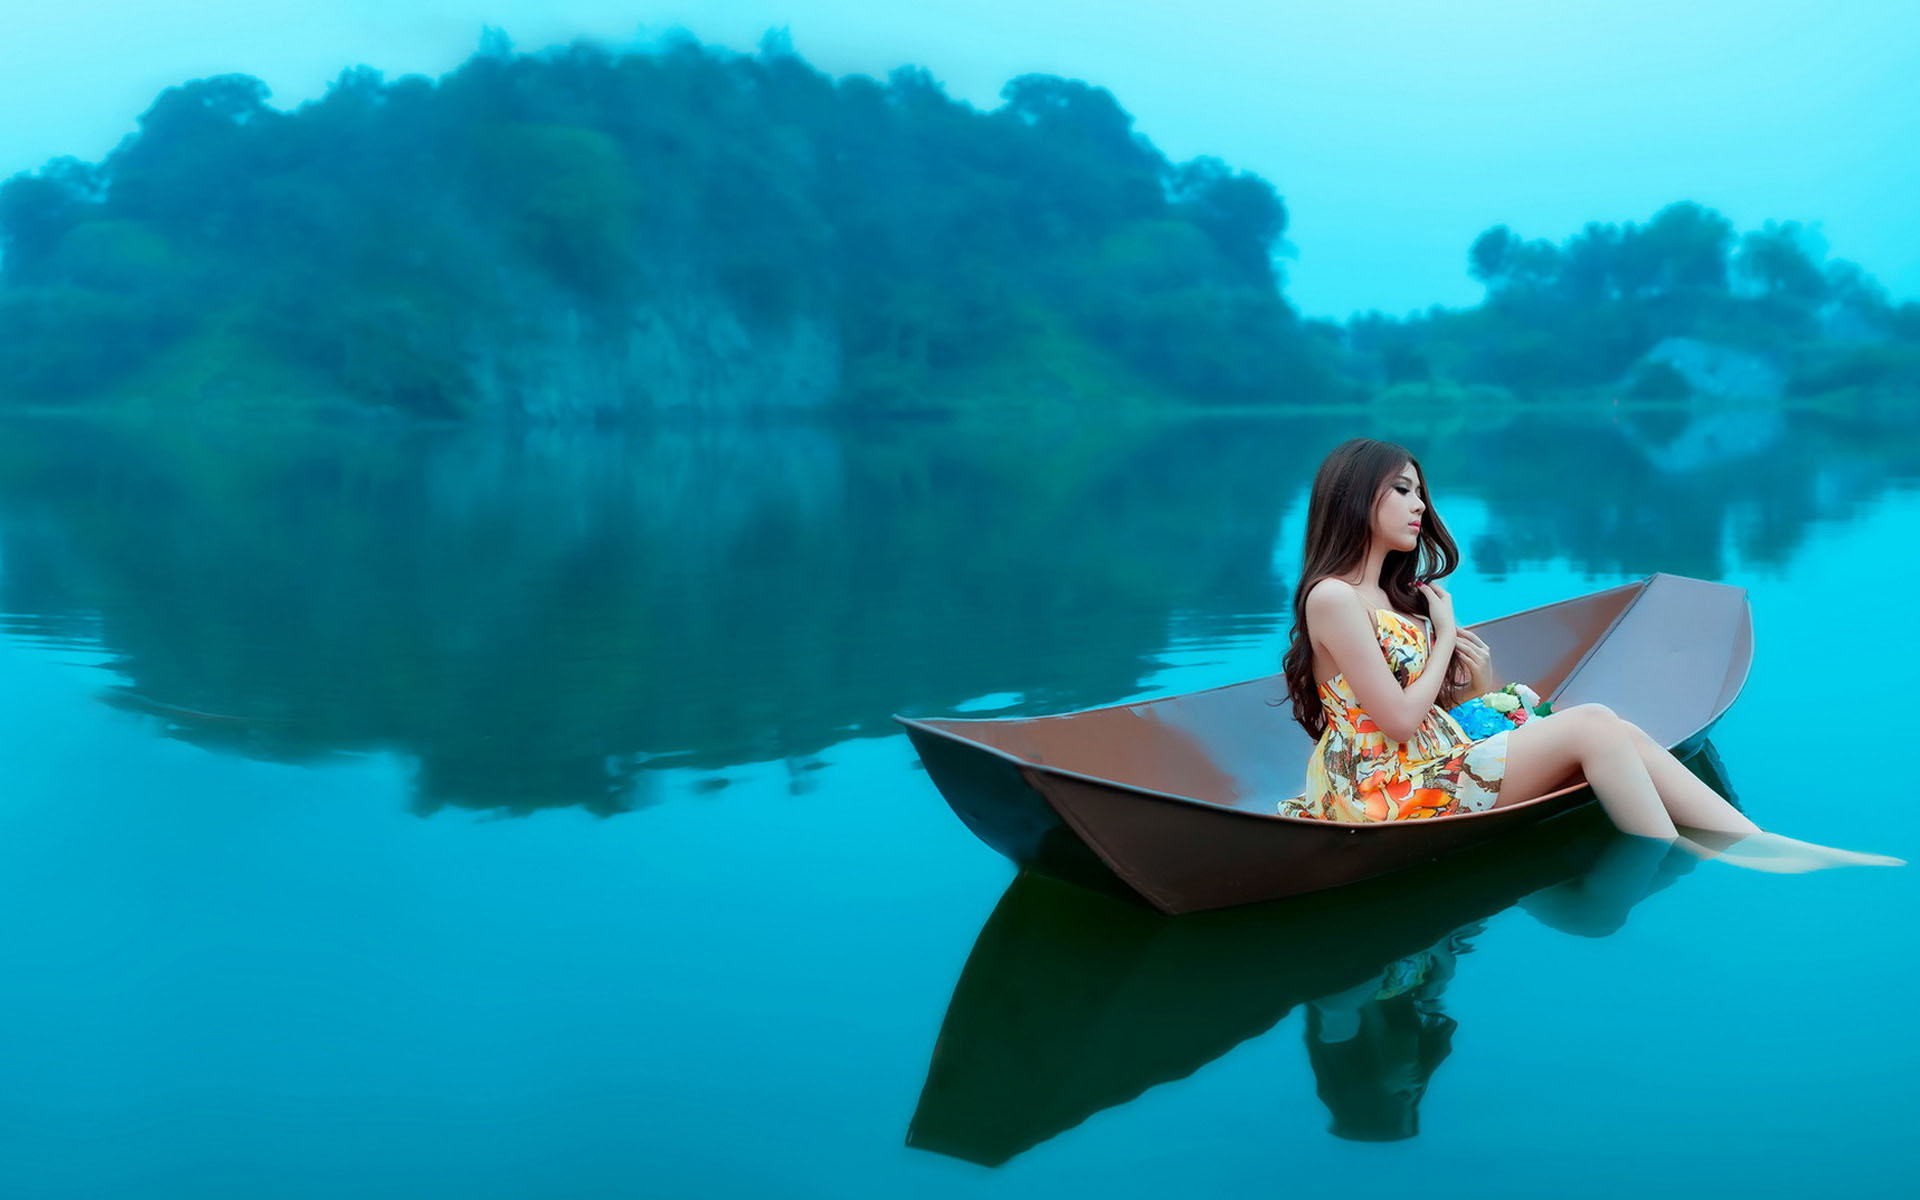 دختر آسیایی و قایق